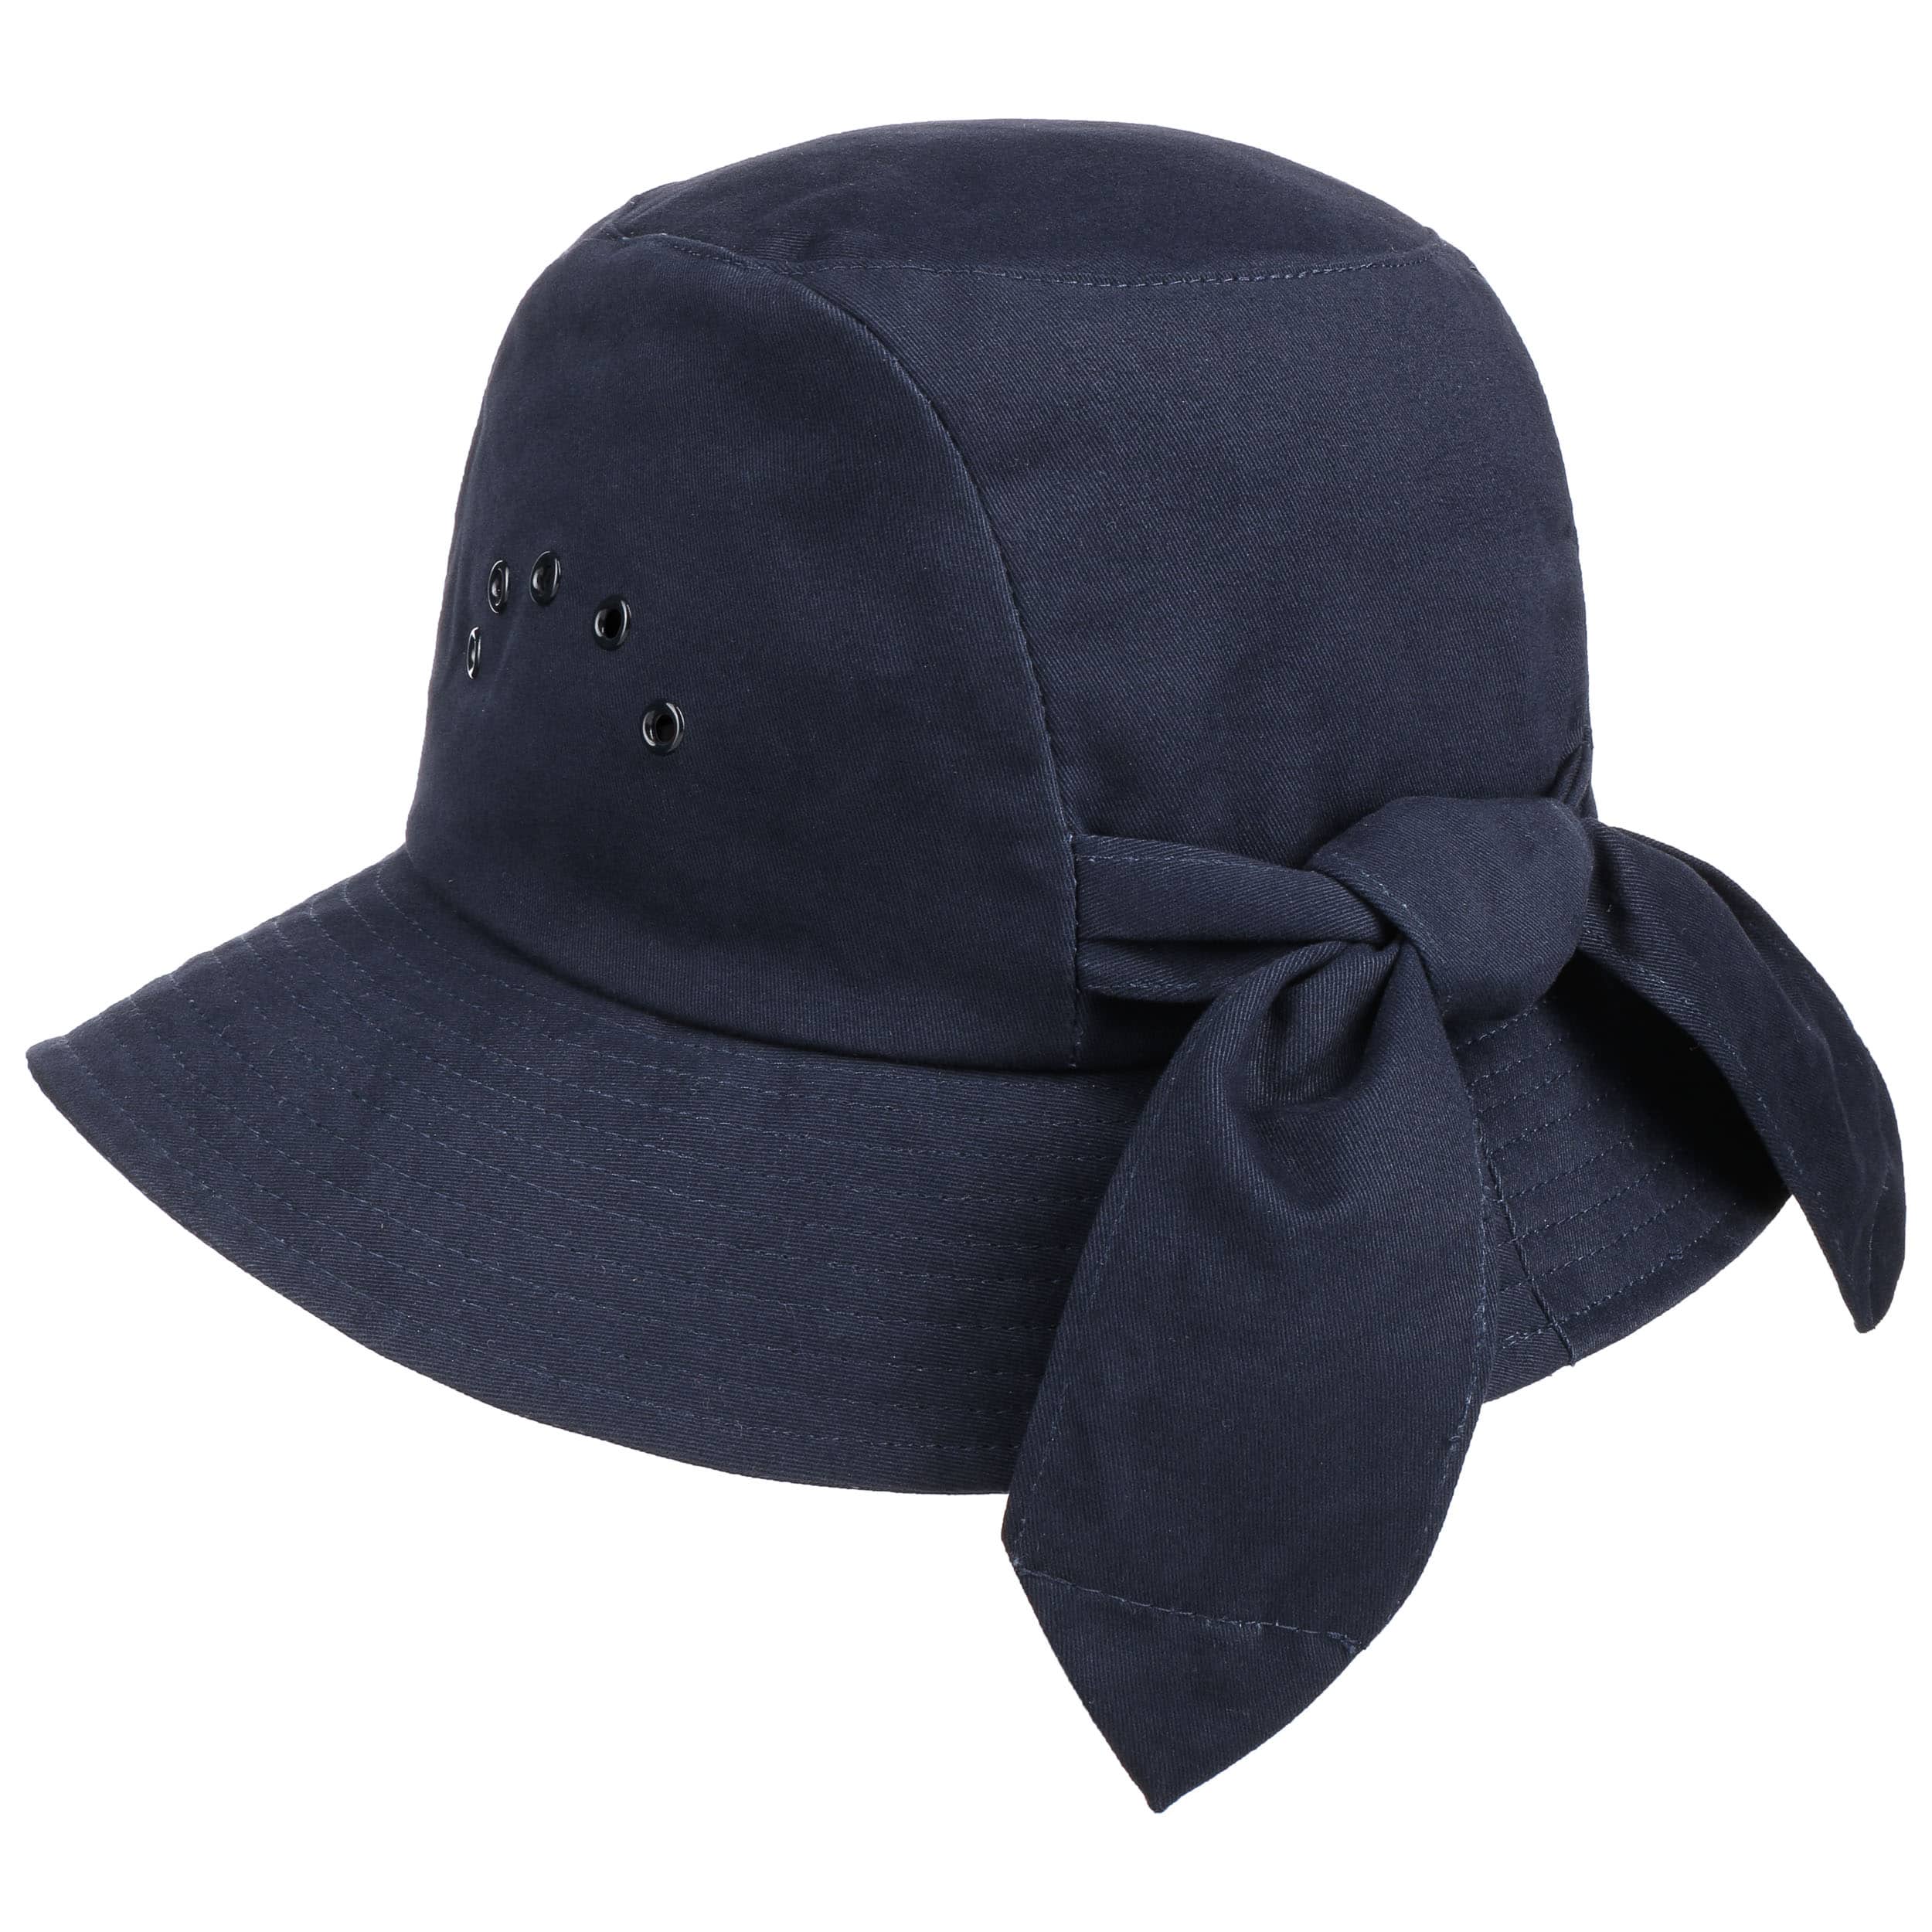 Accessoires Hoeden & petten Nette hoeden Hoge hoeden Akan hoeden 